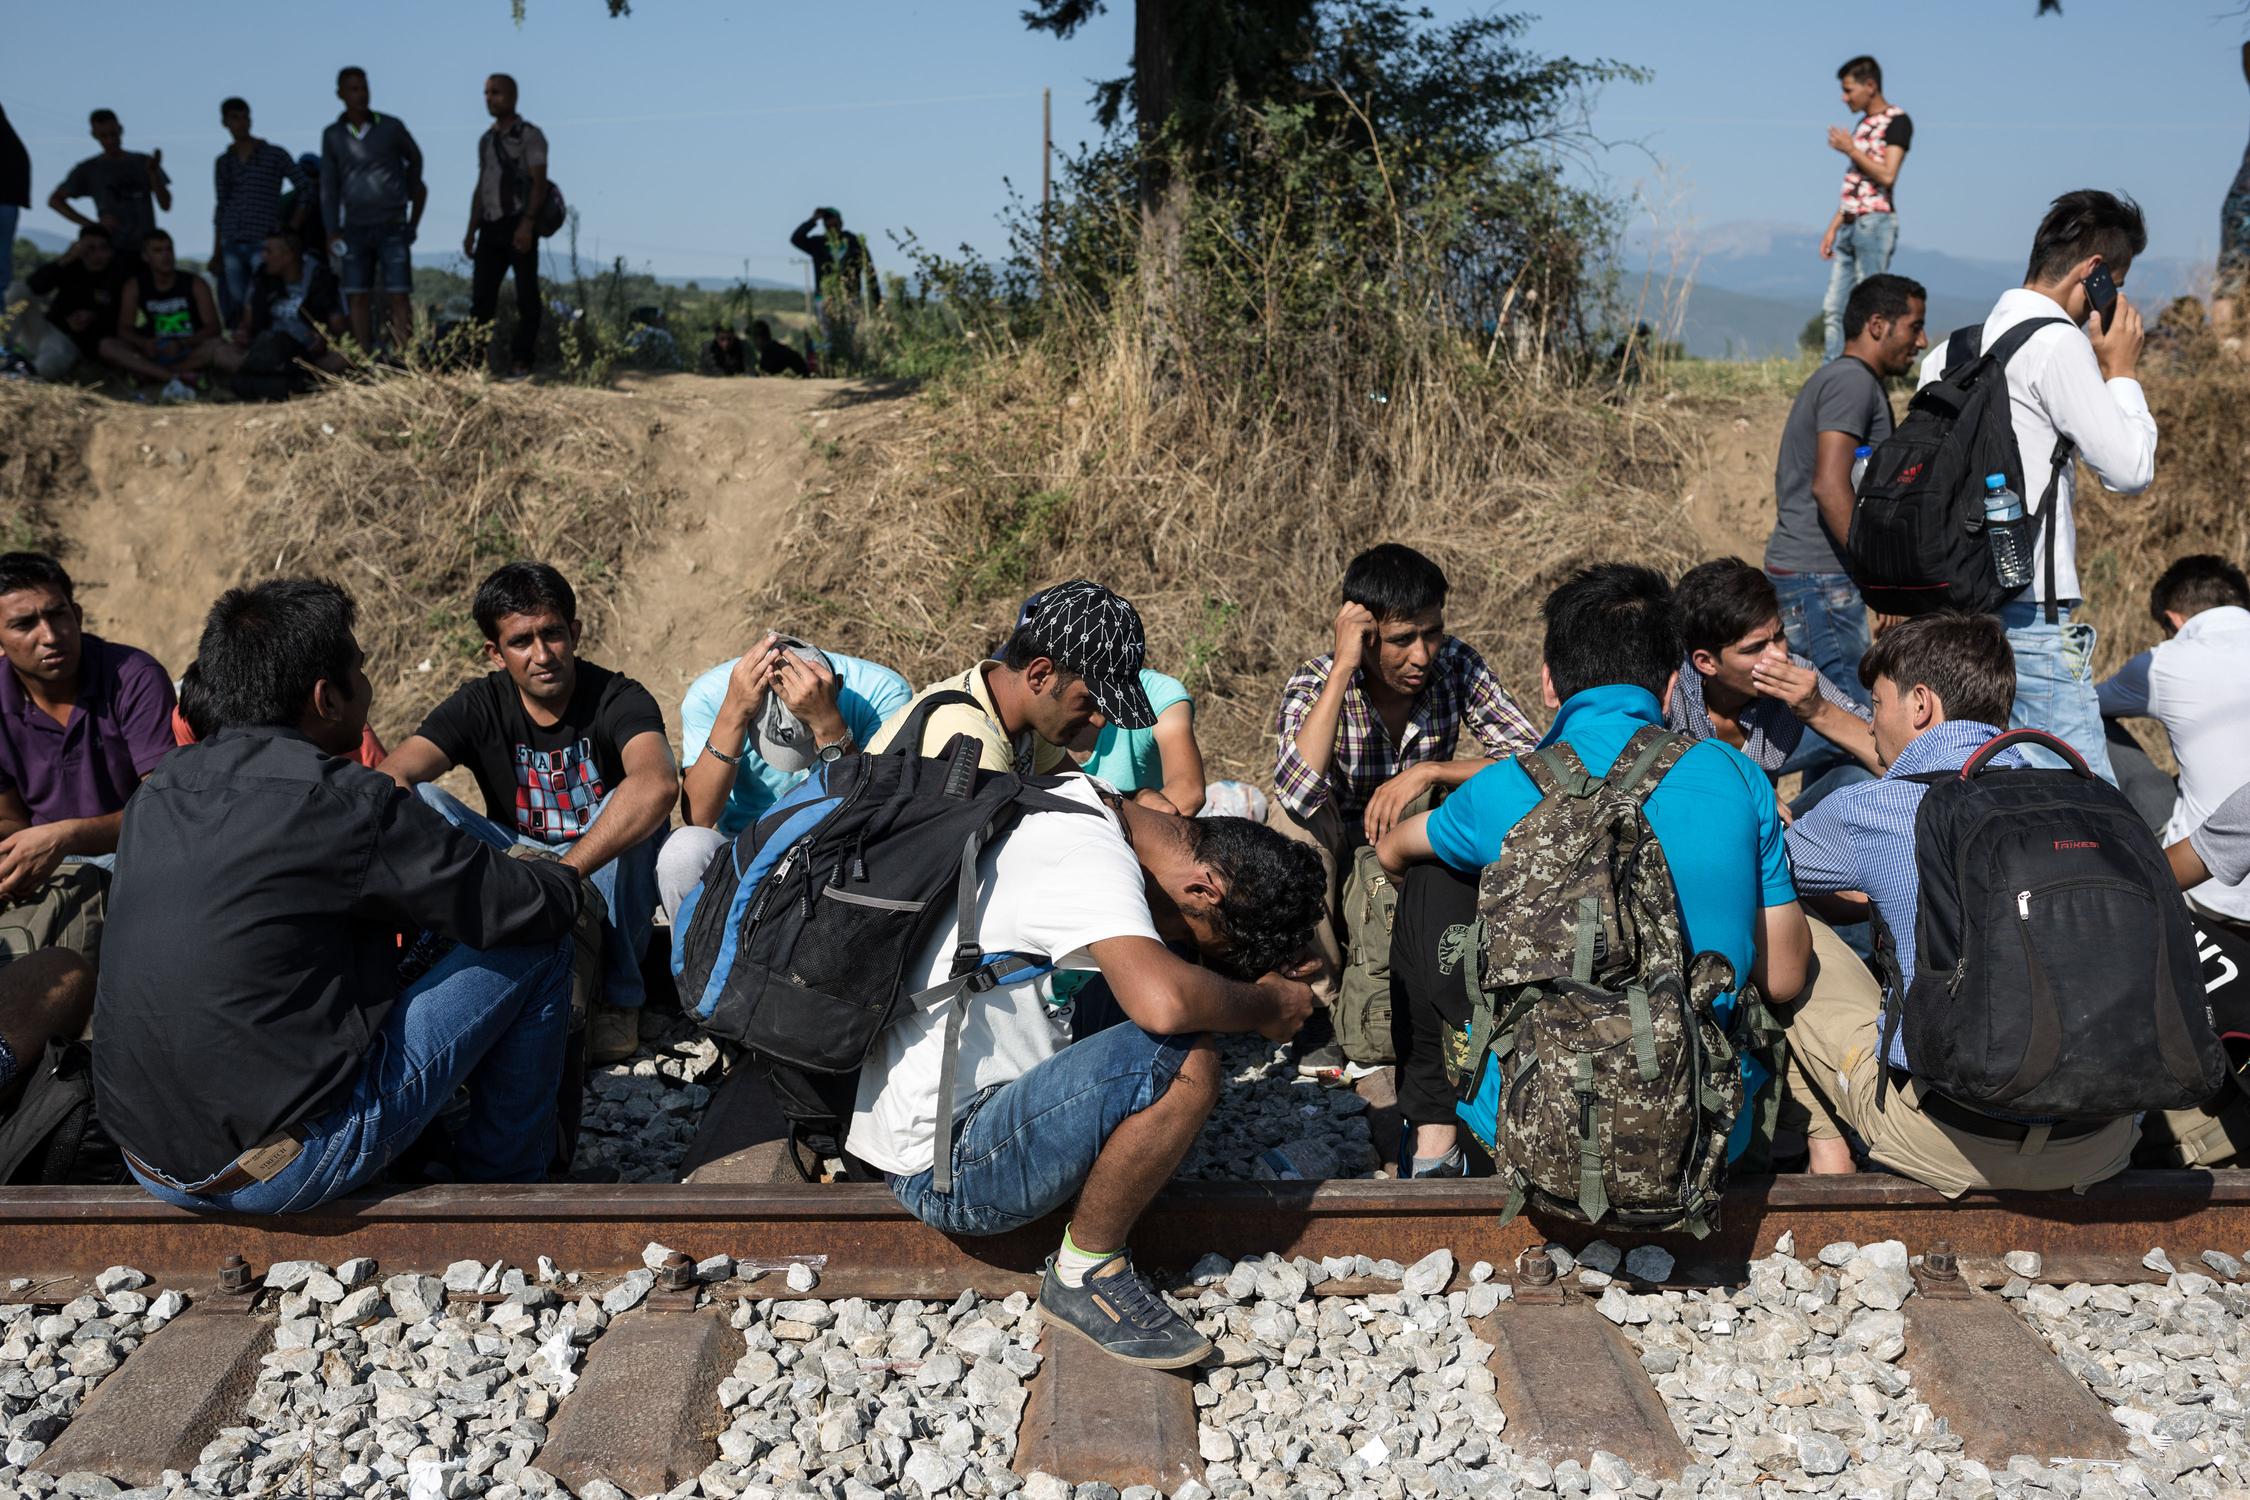 Αναθεώρηση των ευρωπαϊκών κανόνων για το άσυλο ζητούν Ρώμη- Παρίσι- Βερολίνο